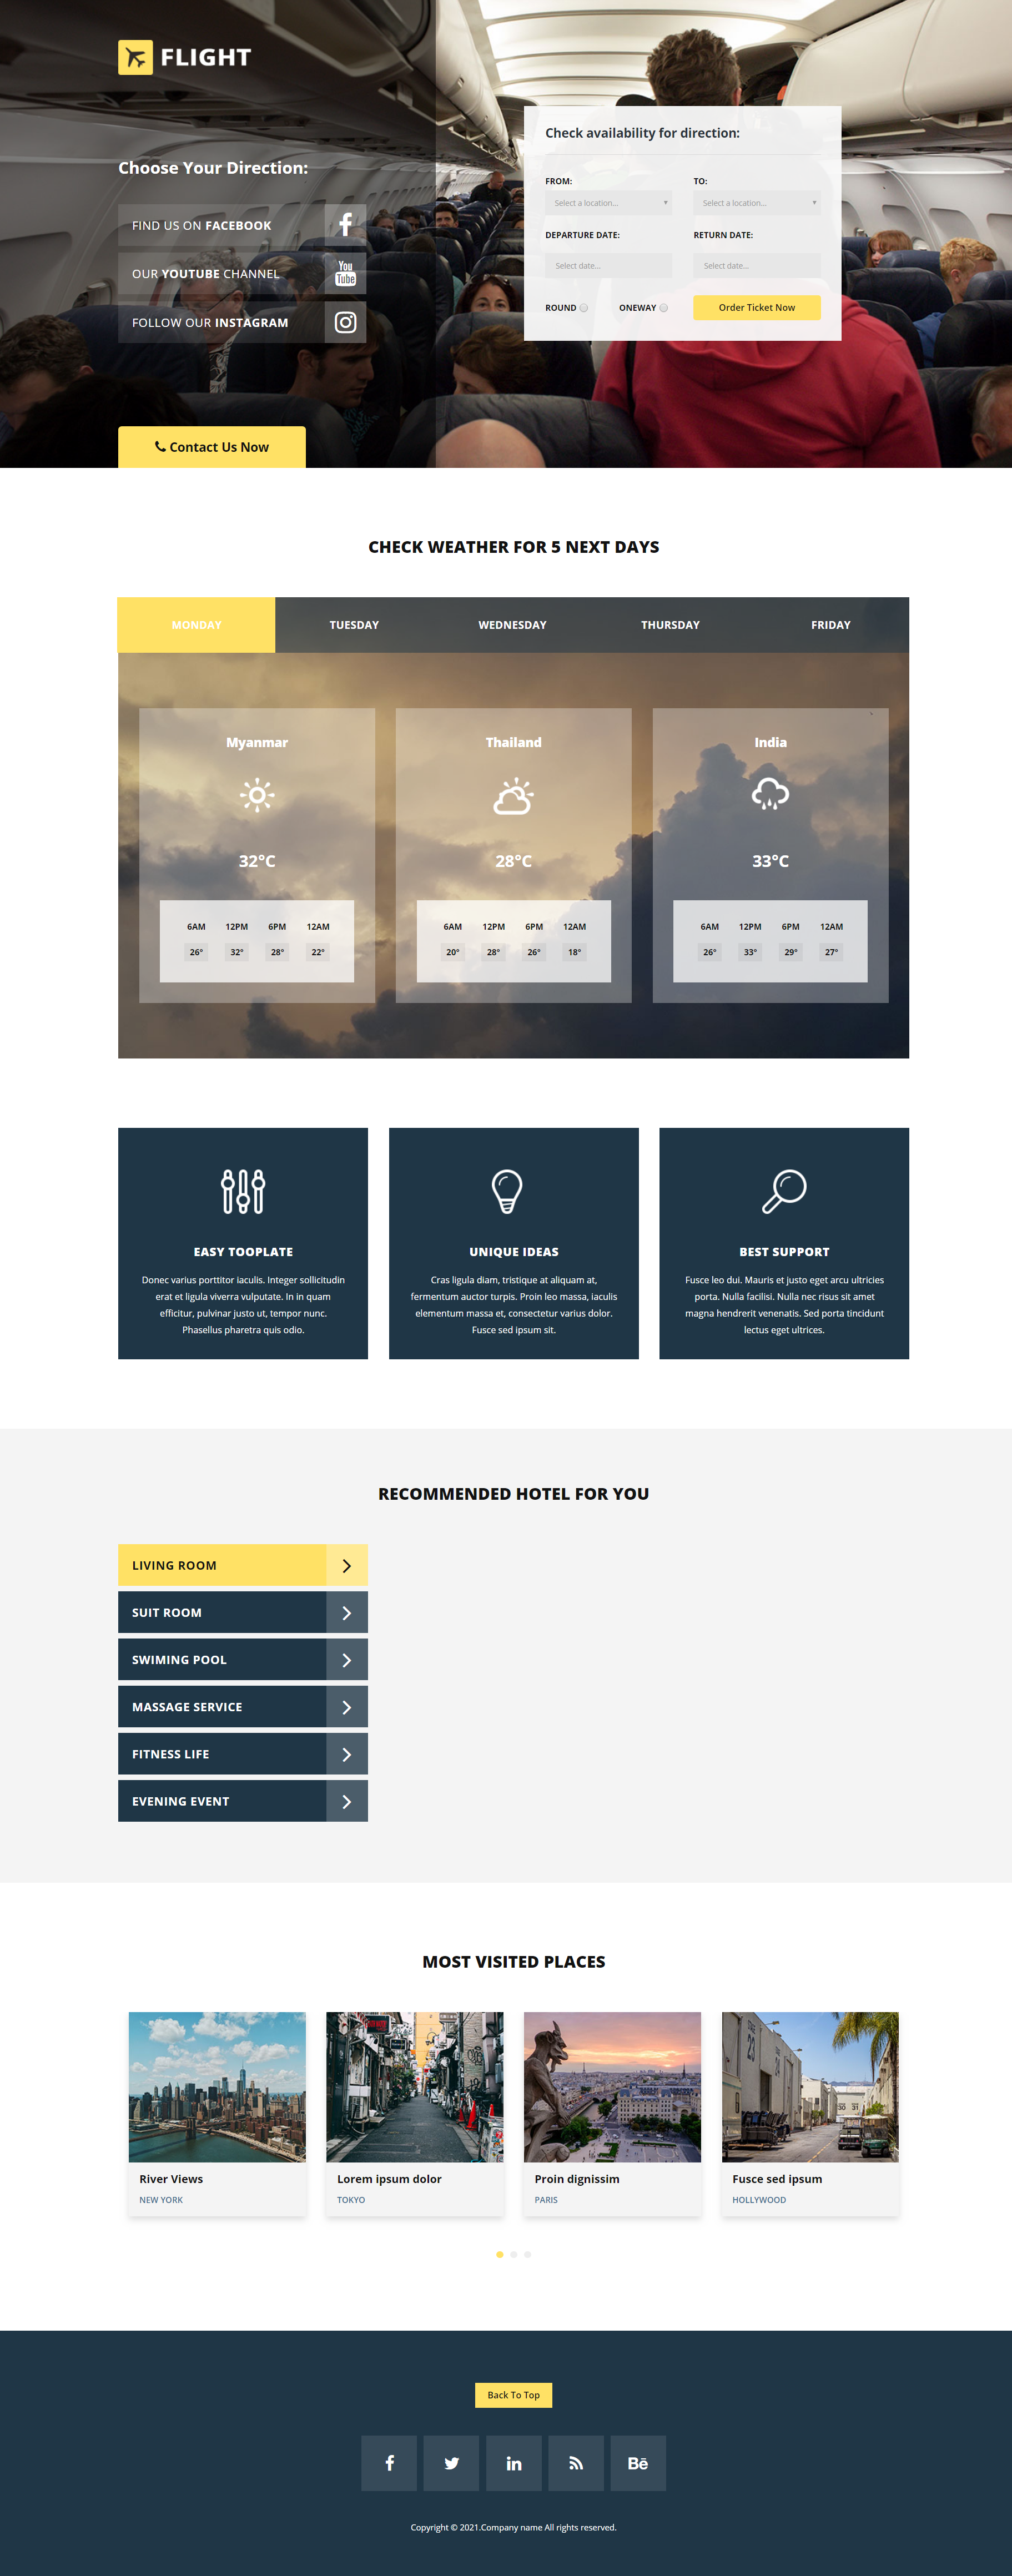 HTML5黄色宽屏样式创意航空公司企业网站模板代码下载